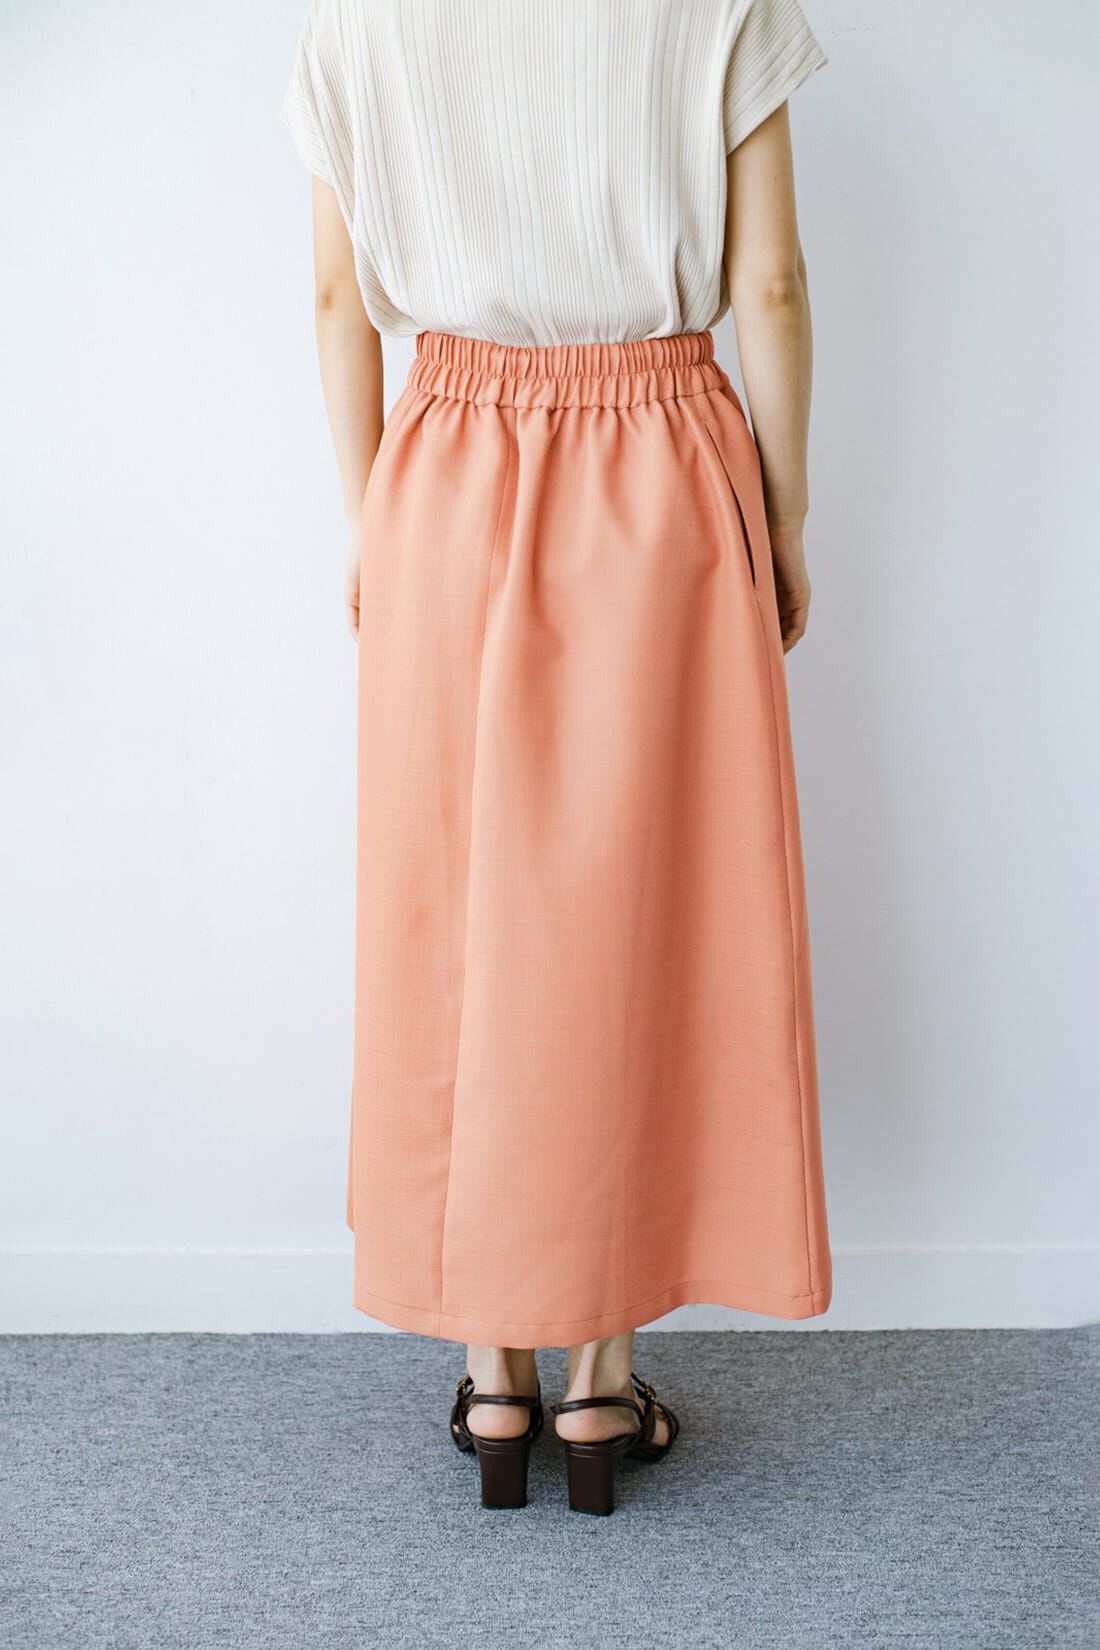 haco!|ｈａｃｏ！ これさえあればきれいなお姉さんになれそうな気がする 麻調素材のきれいめラップ風スカート〈オレンジ〉